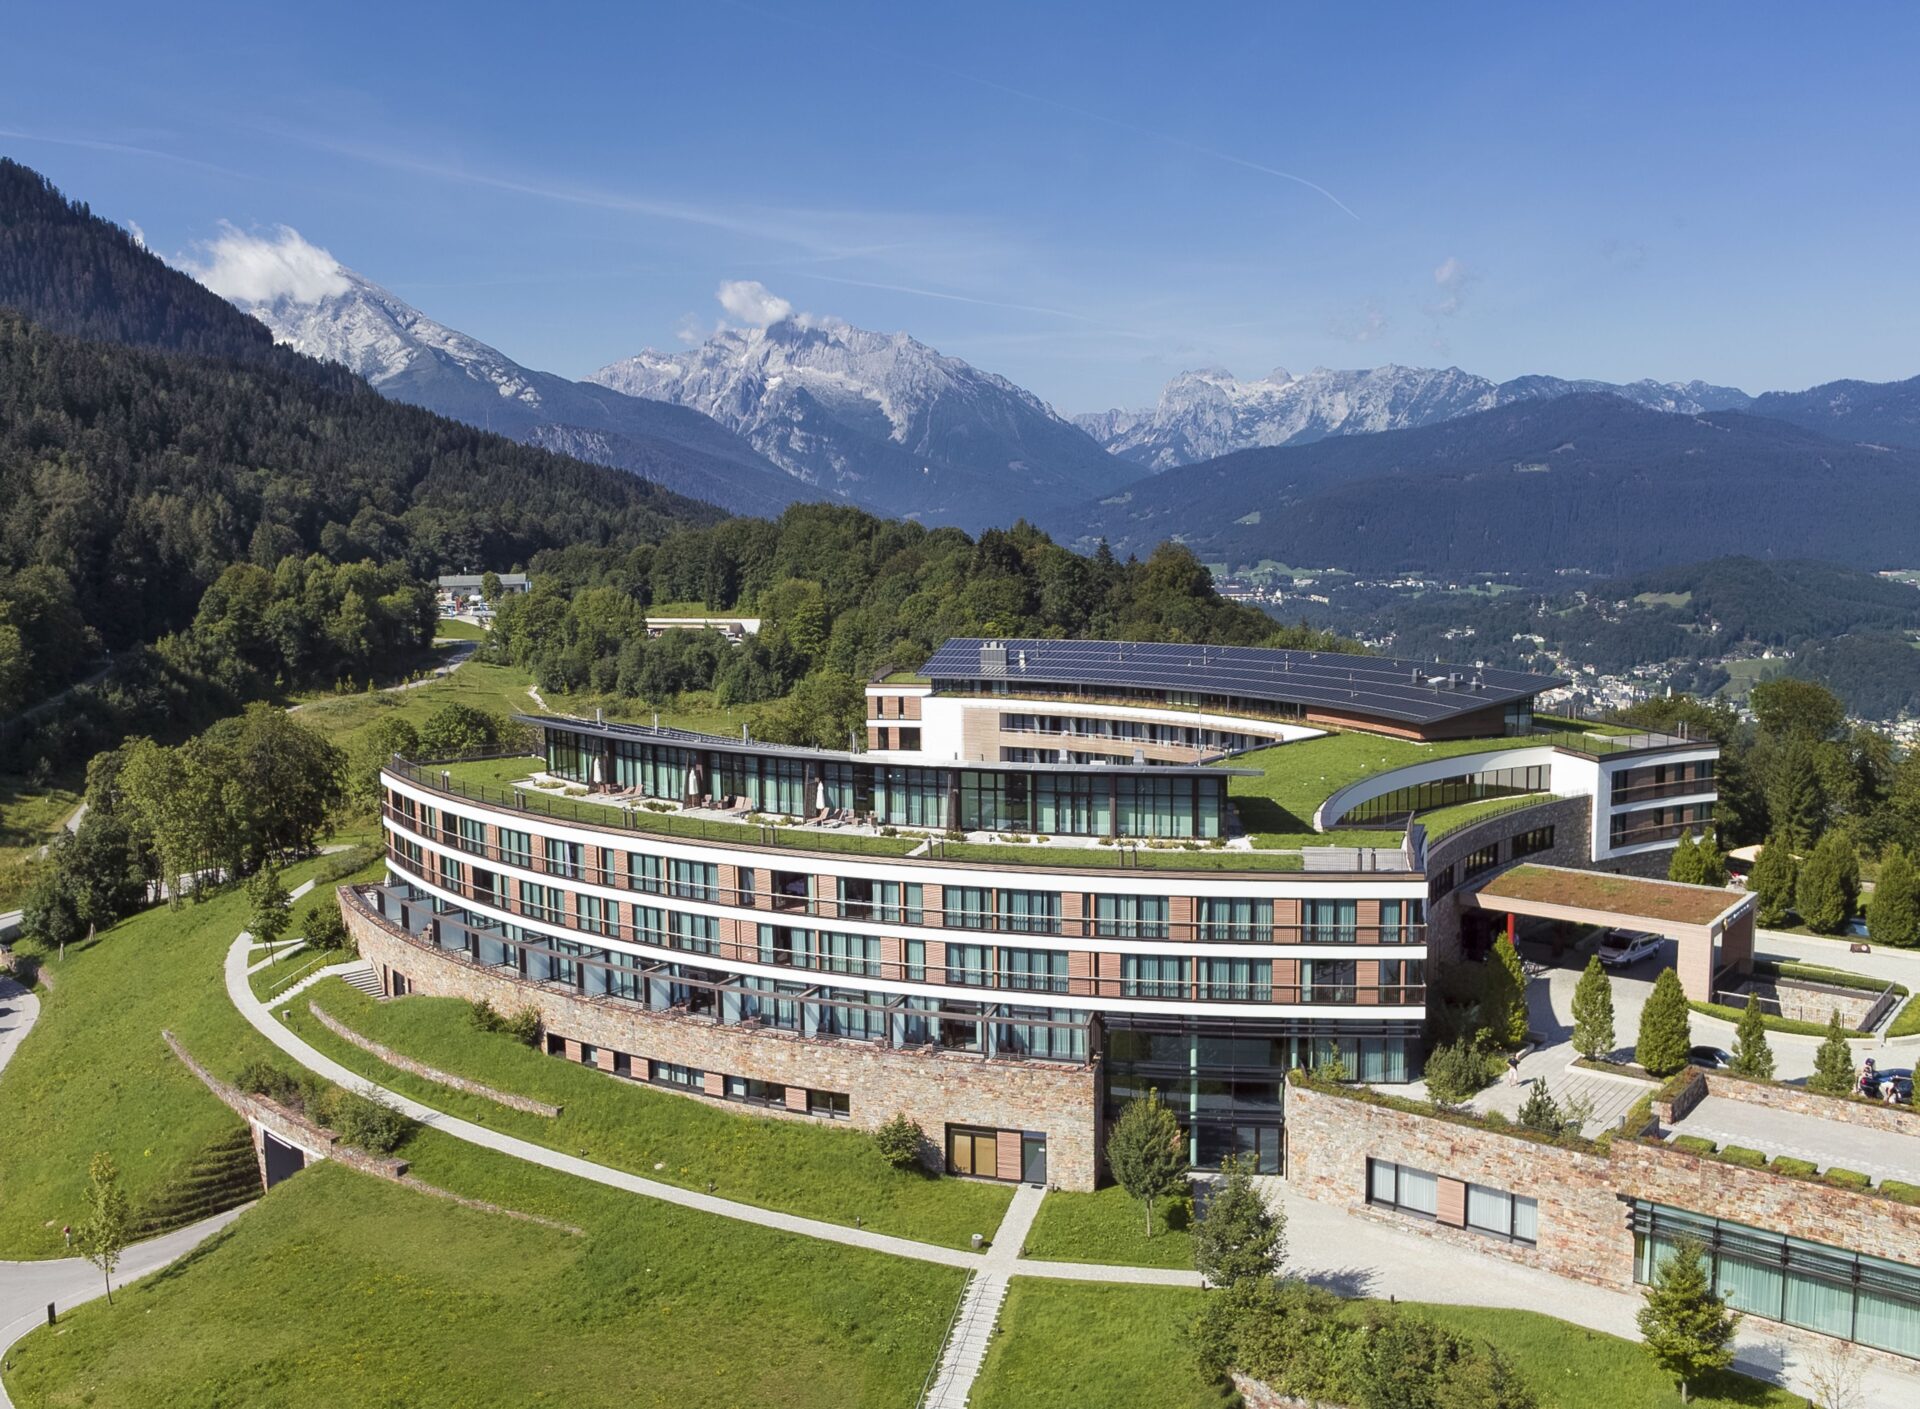 
Kempinski Hotel Berchtesgaden, das einzigartige Bergresort im Herzen der bayerischen Alpen